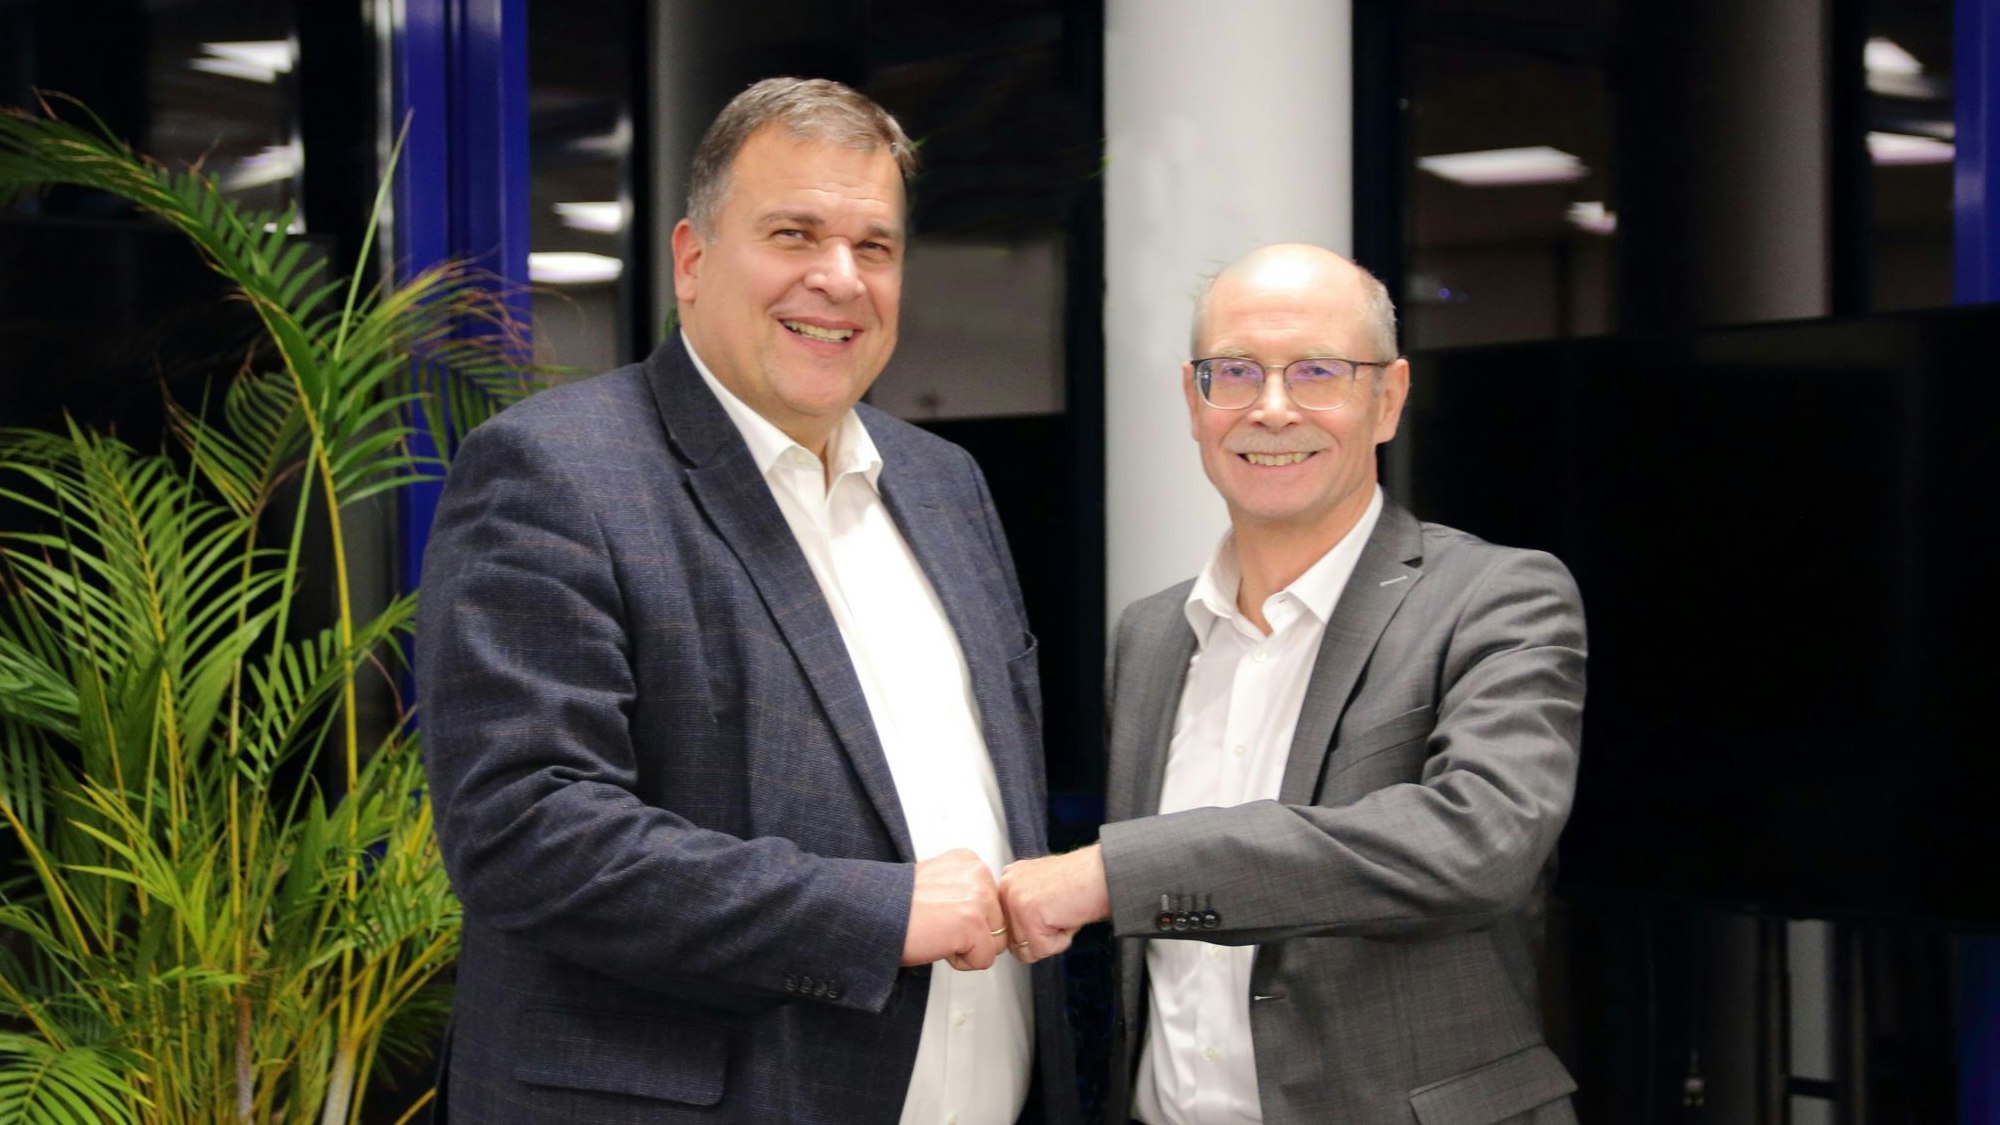 Thomas Gäde und Dieter Kesper (r.) freuen sich über den geglückten Zusammenschluss 
ihrer beiden Organisation zur gemeinsam Stiftung der Cellitinnen